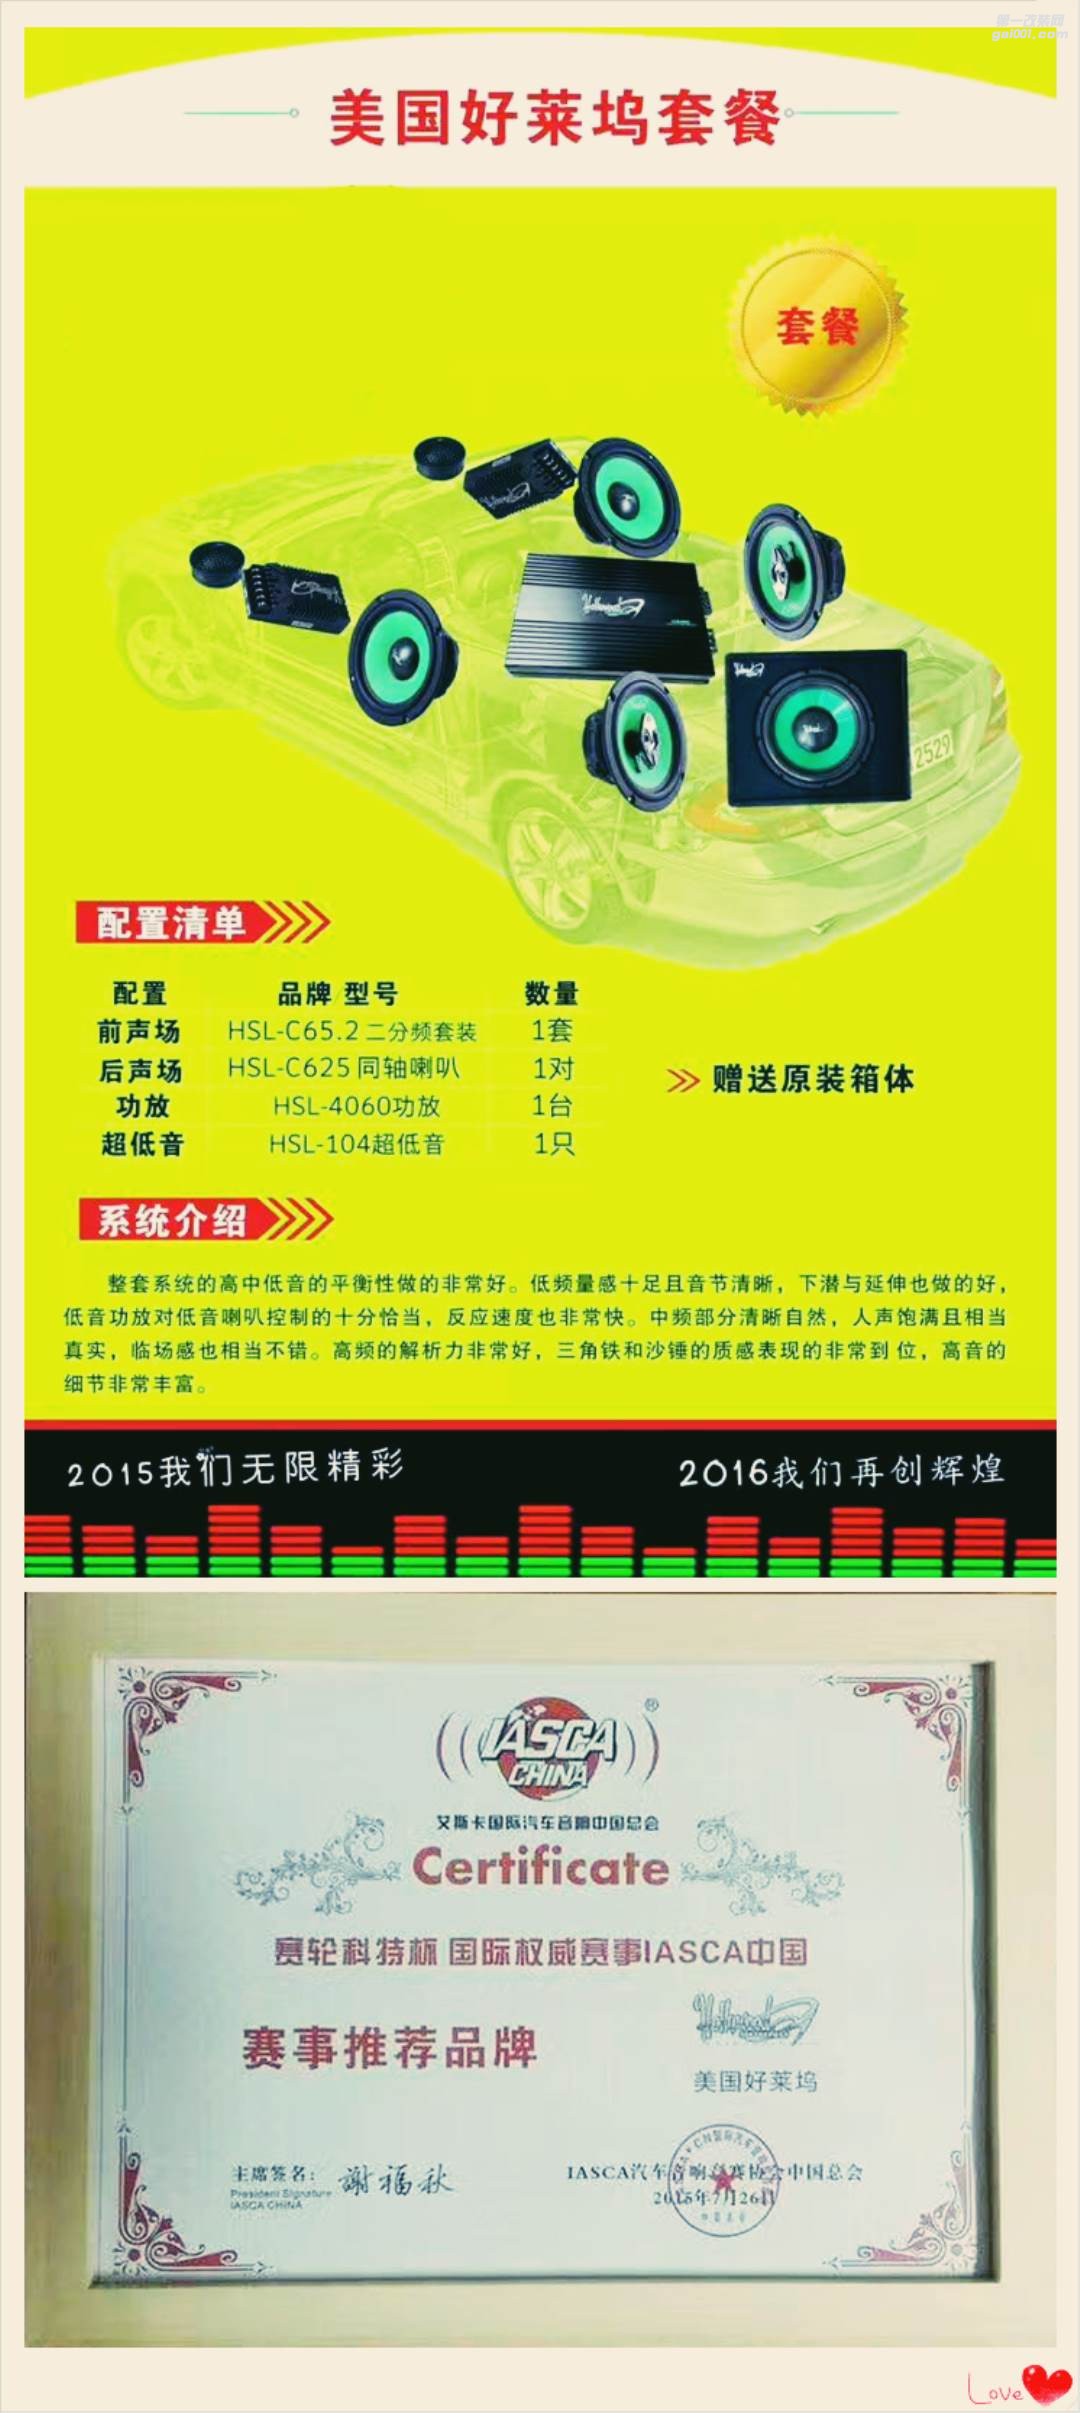 【优惠促销】抚州十一汽车改装店汽车音响大型促销活动